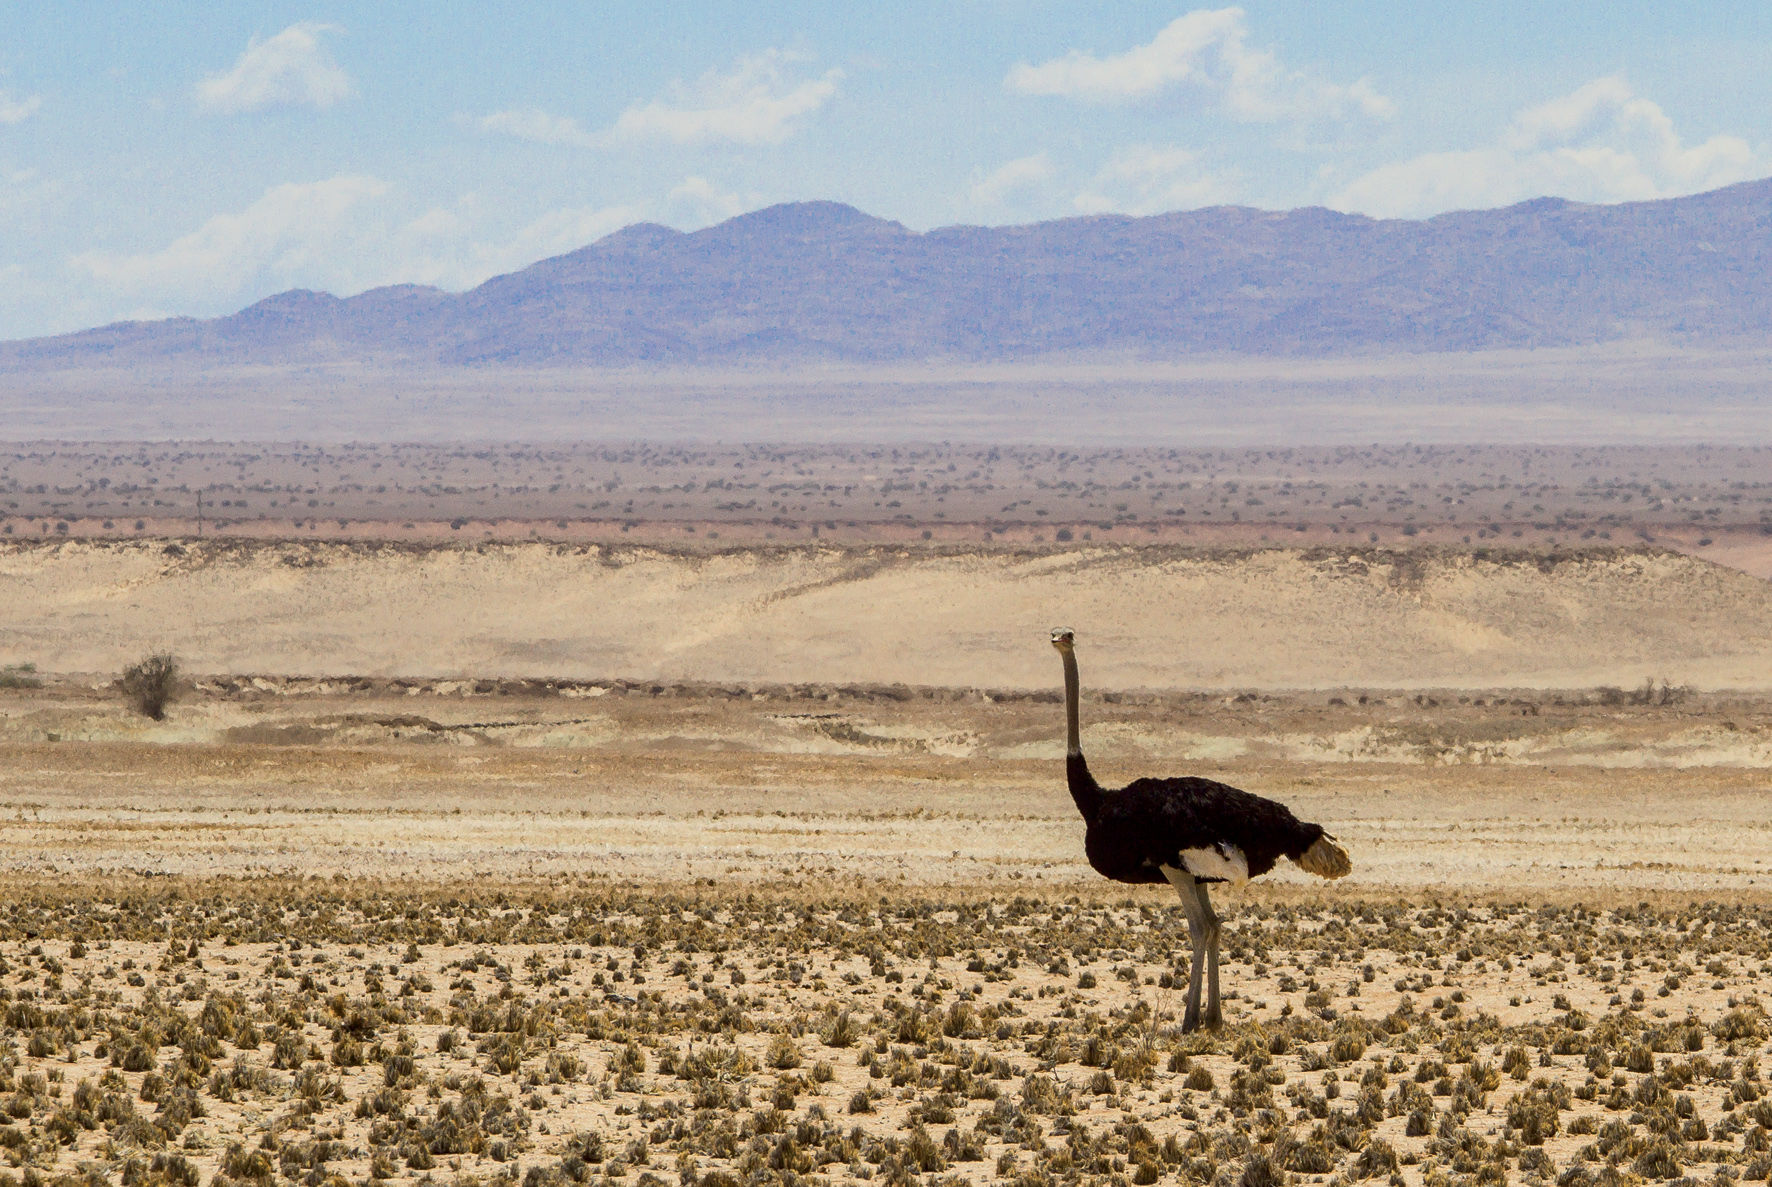 Le désert du Namib est riche d'une faune incroyable. Nous avons souvent vu des autruches le long de la route…